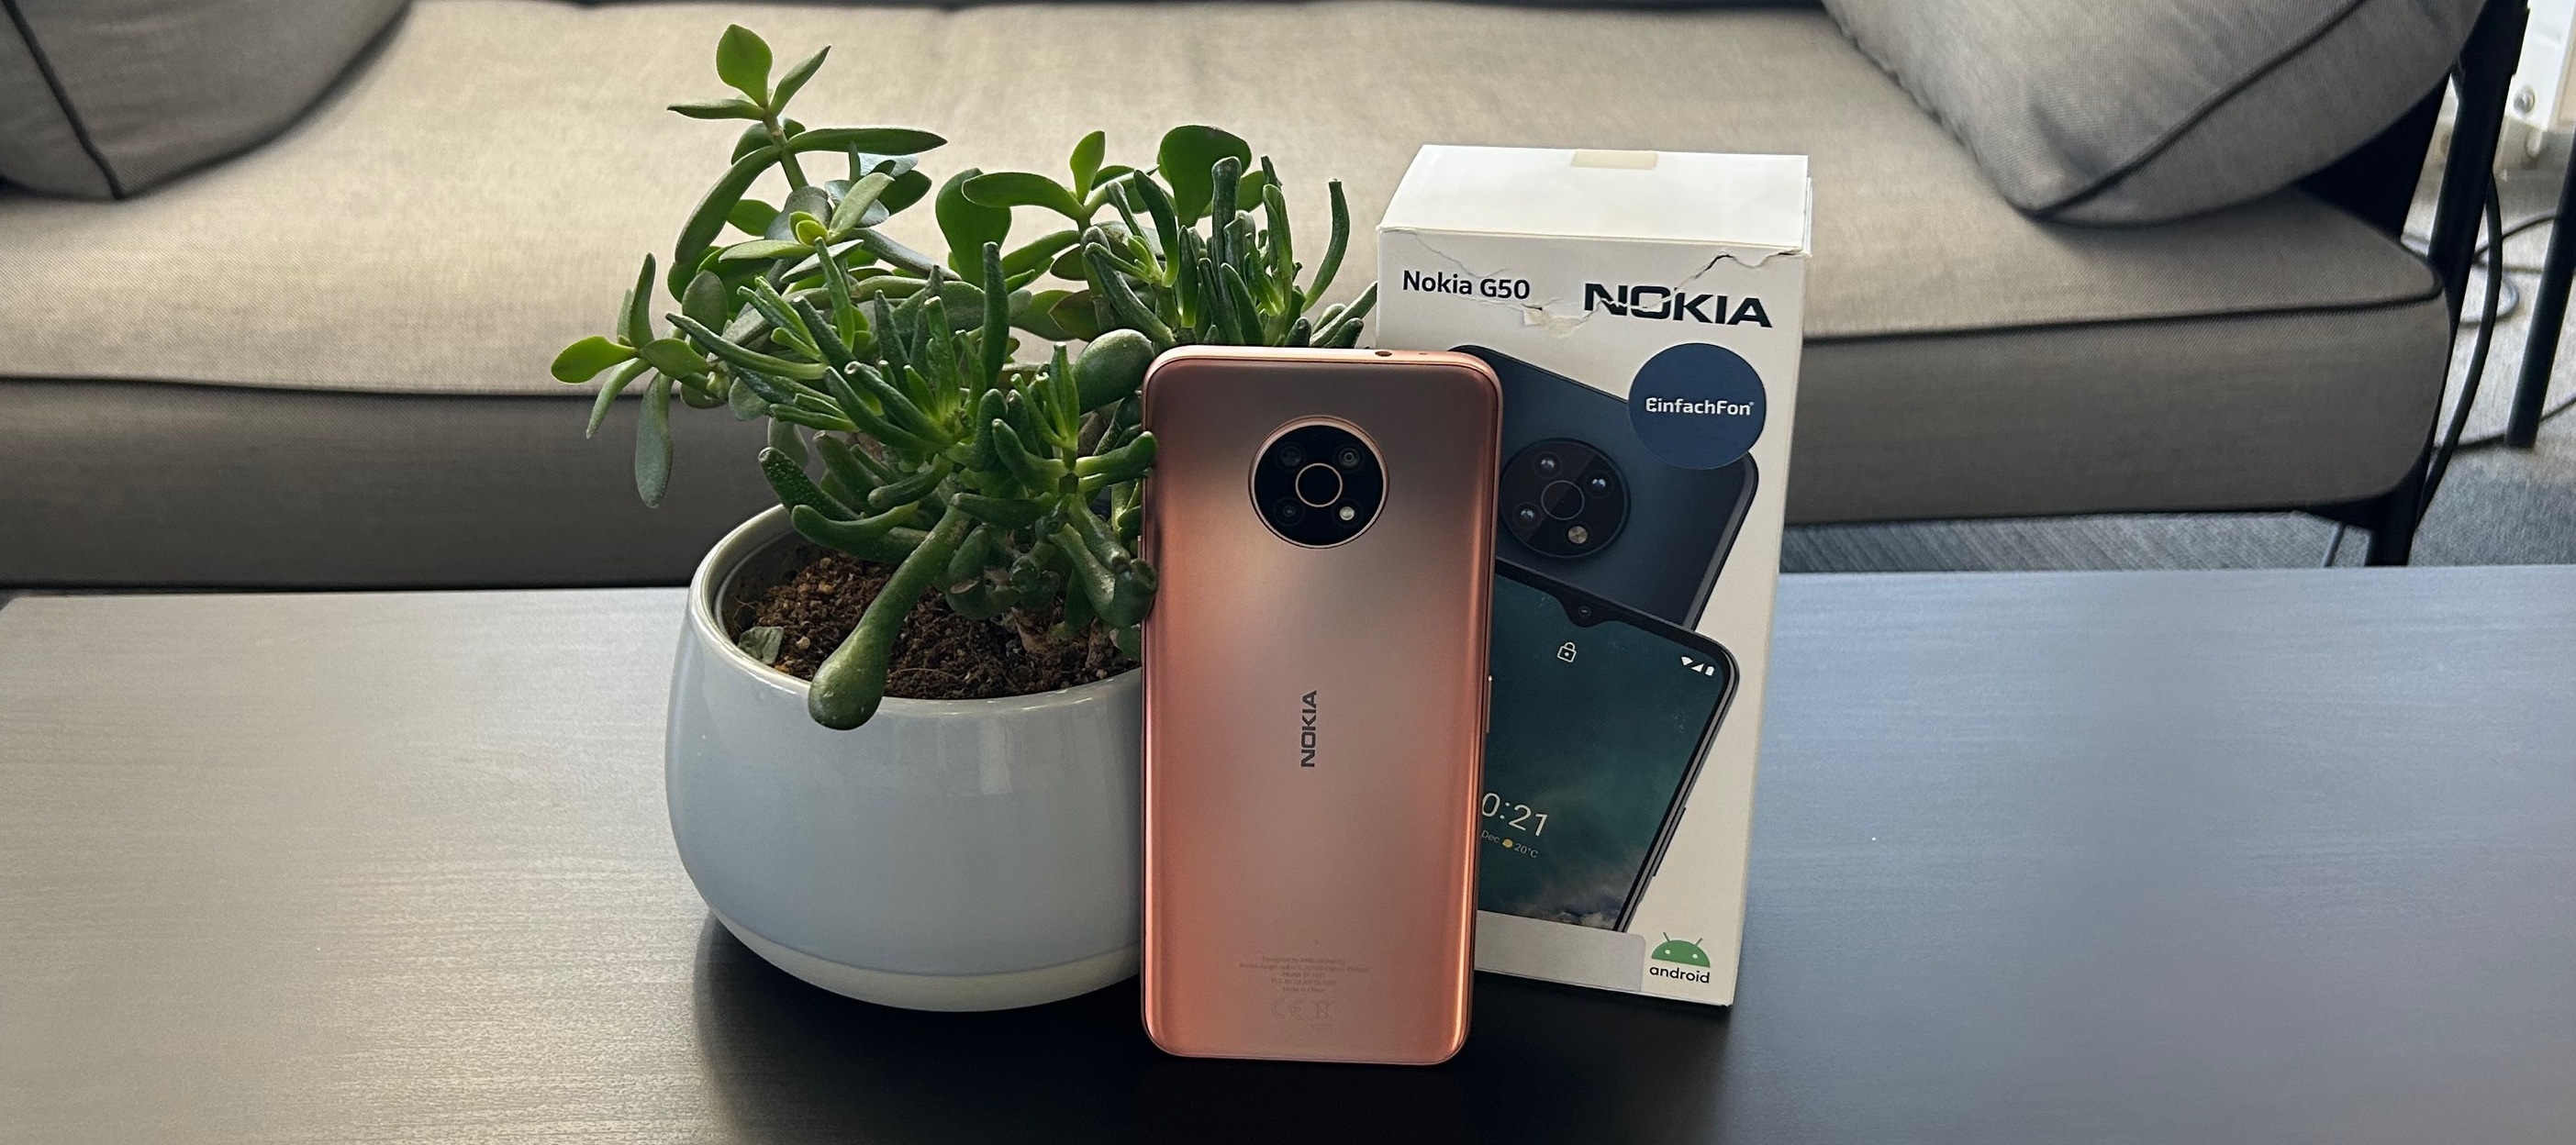 EinfachFon Seniorenhandy (Nokia G50) - teste jetzt das benutzerfreundliche Phone!